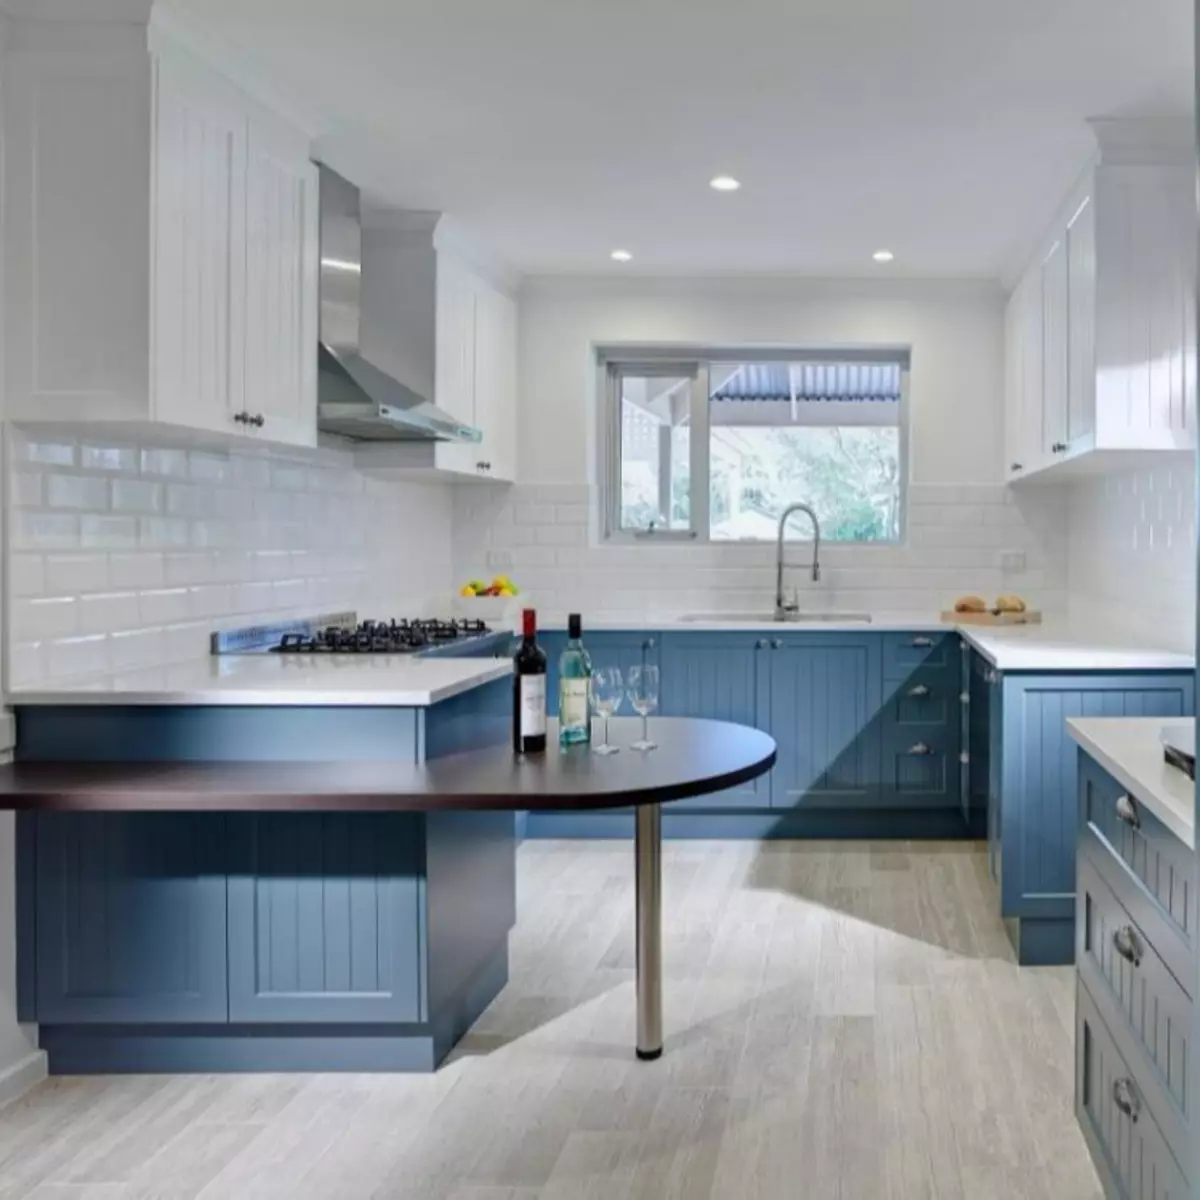 Baltā zilā virtuve (64 fotoattēli): virtuves austiņu iezīmes baltā zilā krāsā virtuves interjera dizainam, akcentiem uz sienām līdzīgām krāsām 9393_18